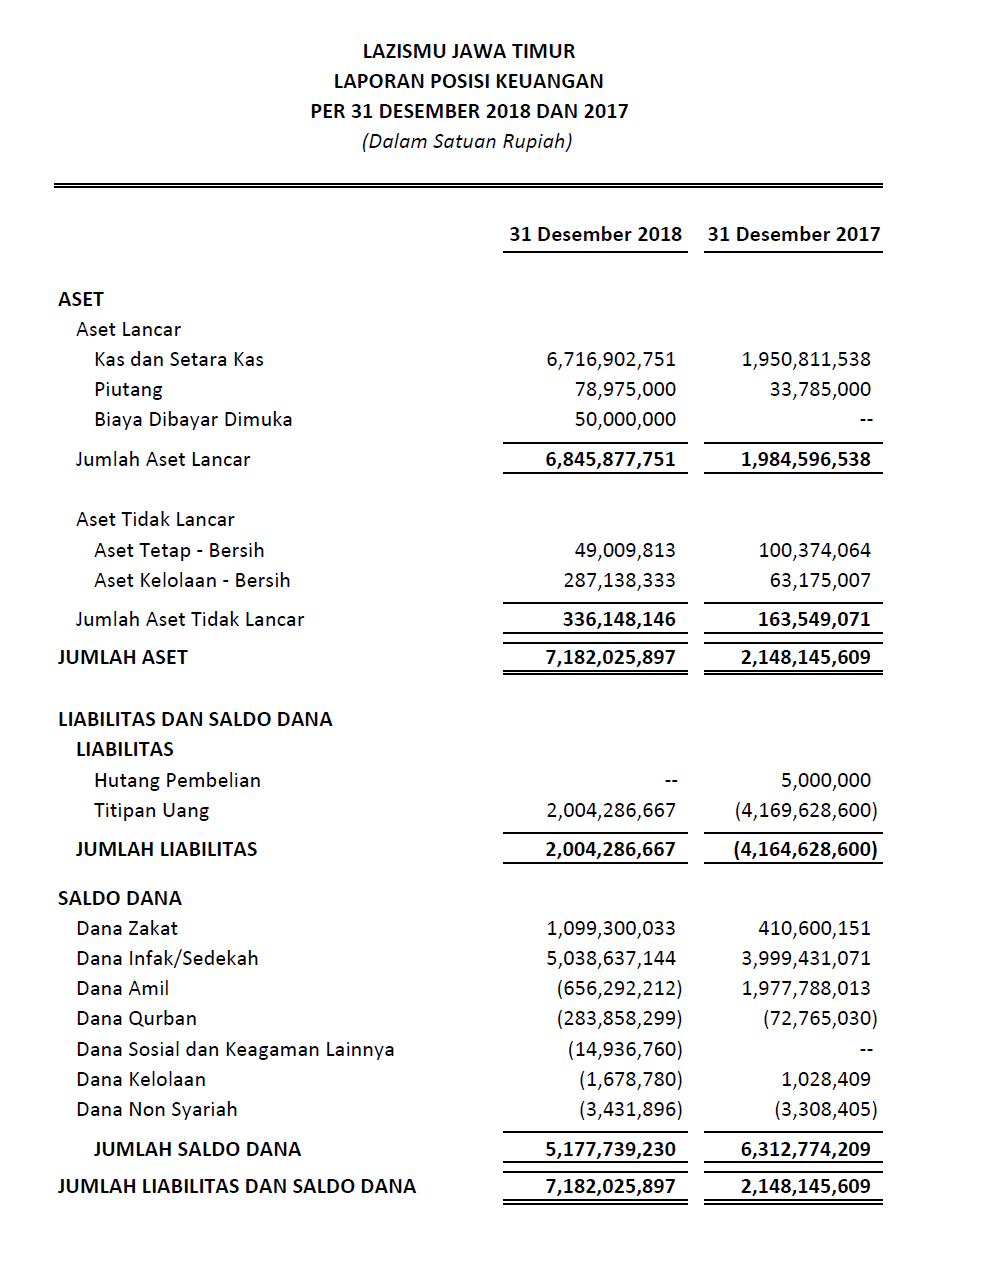 Laporan Keuangan Lazismu Jawa Timur